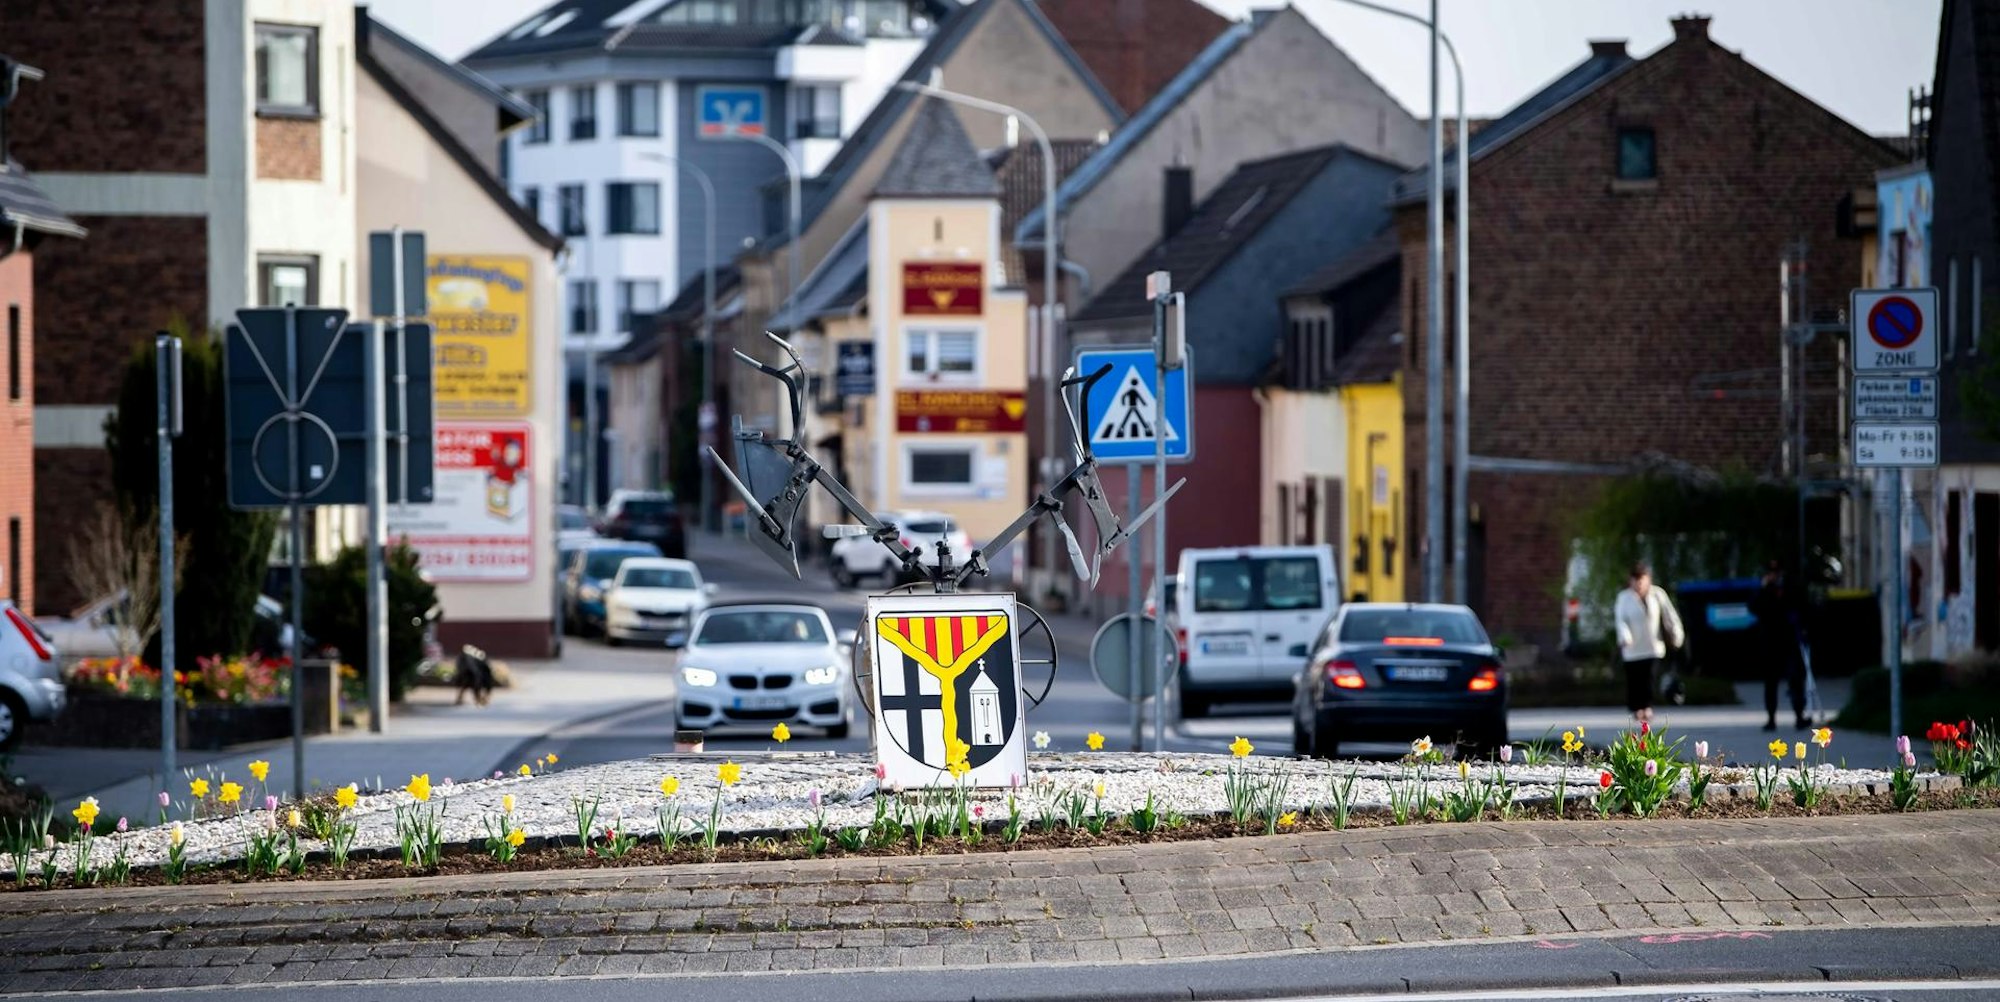 Im Rahmen des Stadtentwicklungskonzepts soll auch die Kölner Straße in Weilerswist gestärkt und überarbeitet werden.